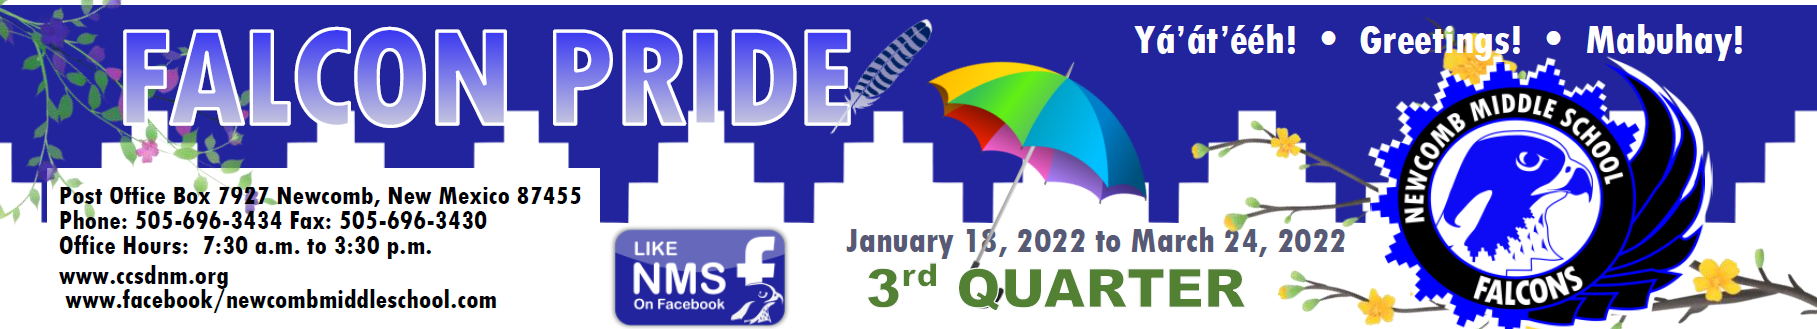 Falcon Pride 3rd Quarter Newsletter Header